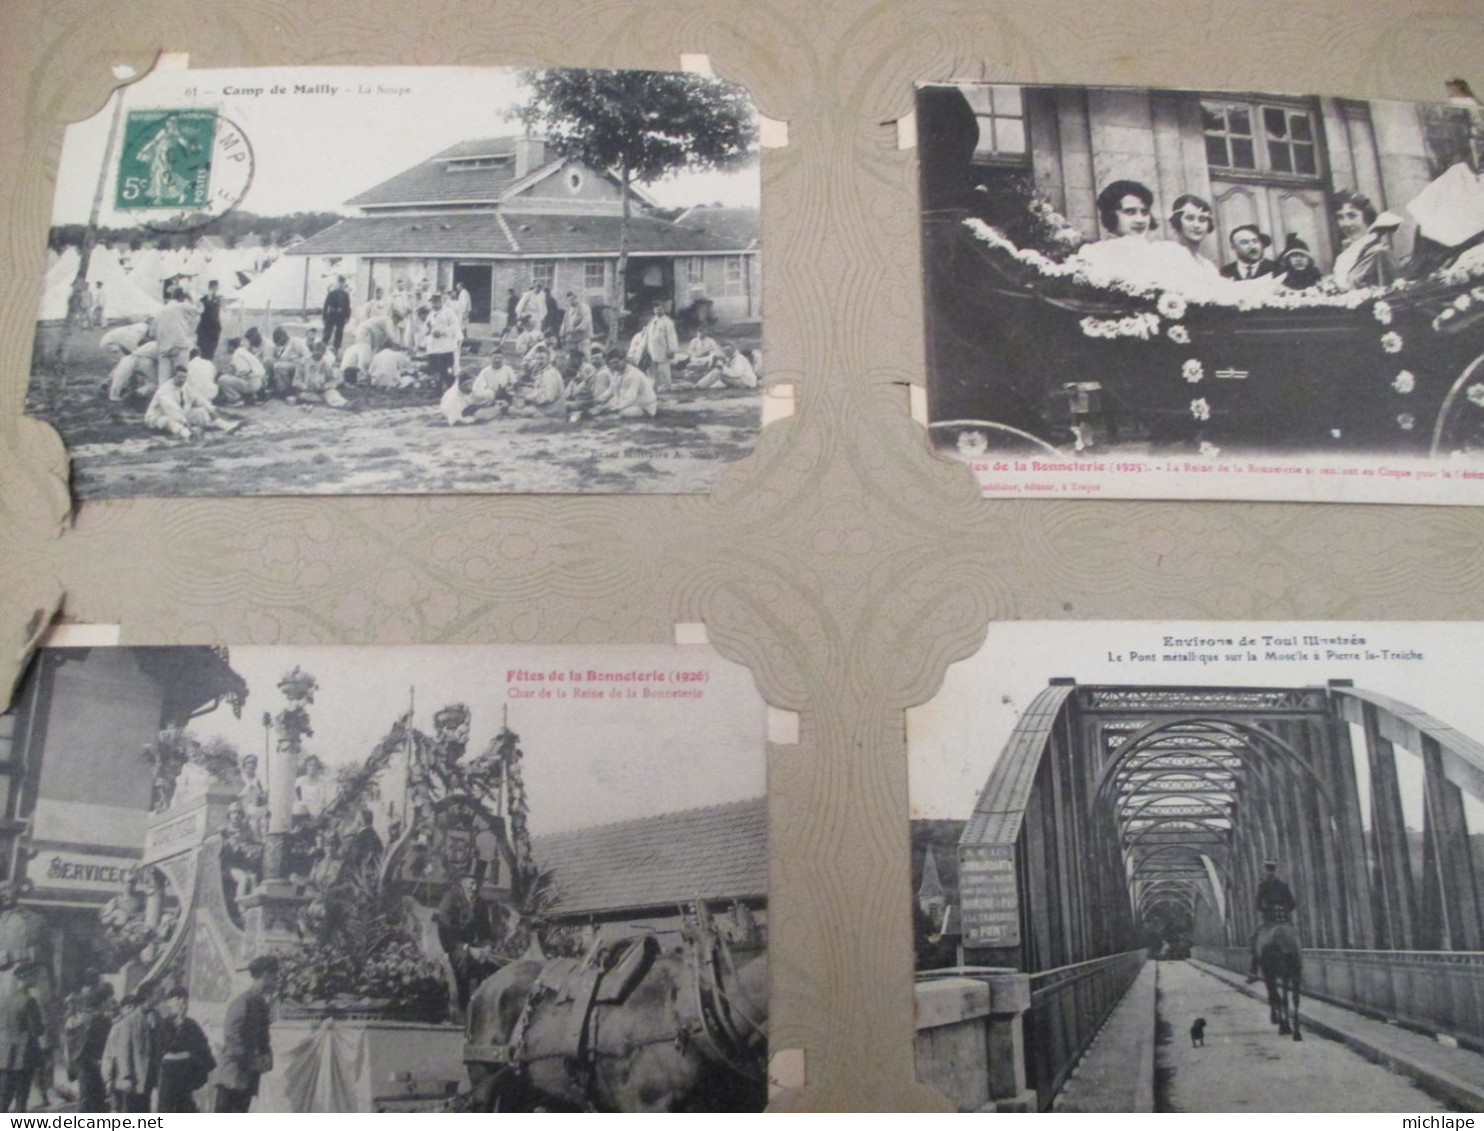 Vieil album de cartes postales - environs 500 cartes vendu en l'état  - poids 3 Kg 800